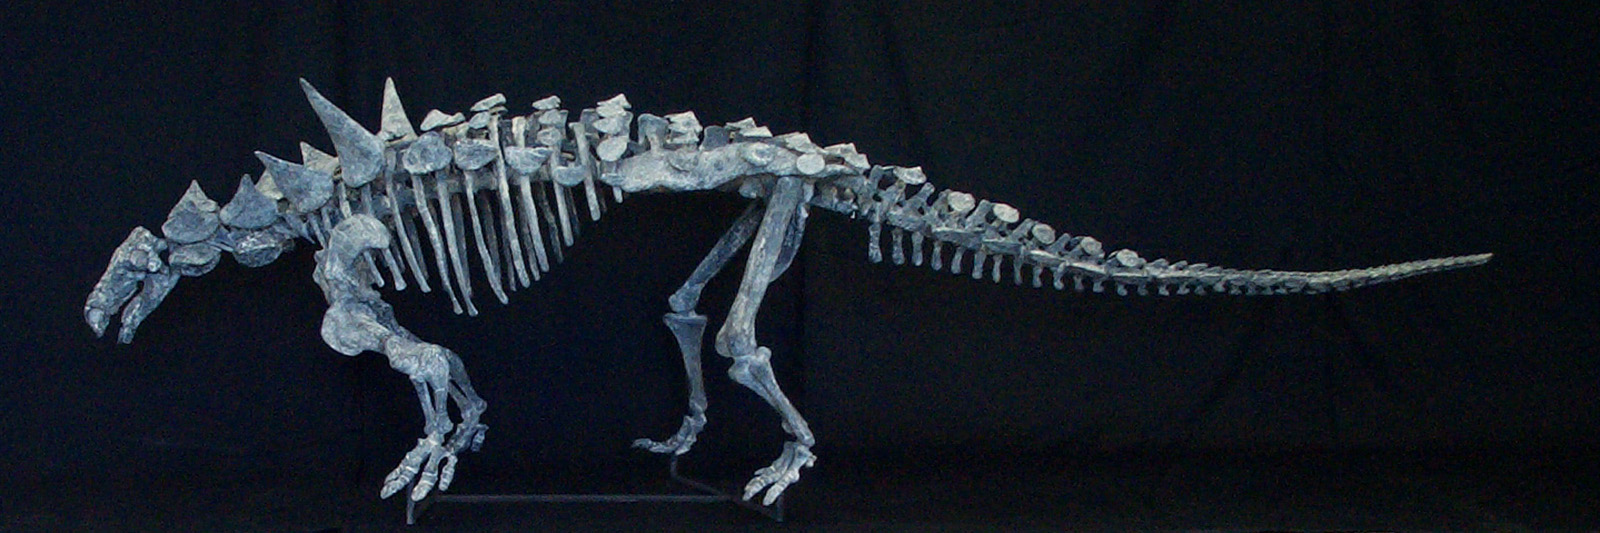 福井県立恐竜博物館所蔵の恐竜「ヨロイ竜」をはじめとした、骨格標本も展示